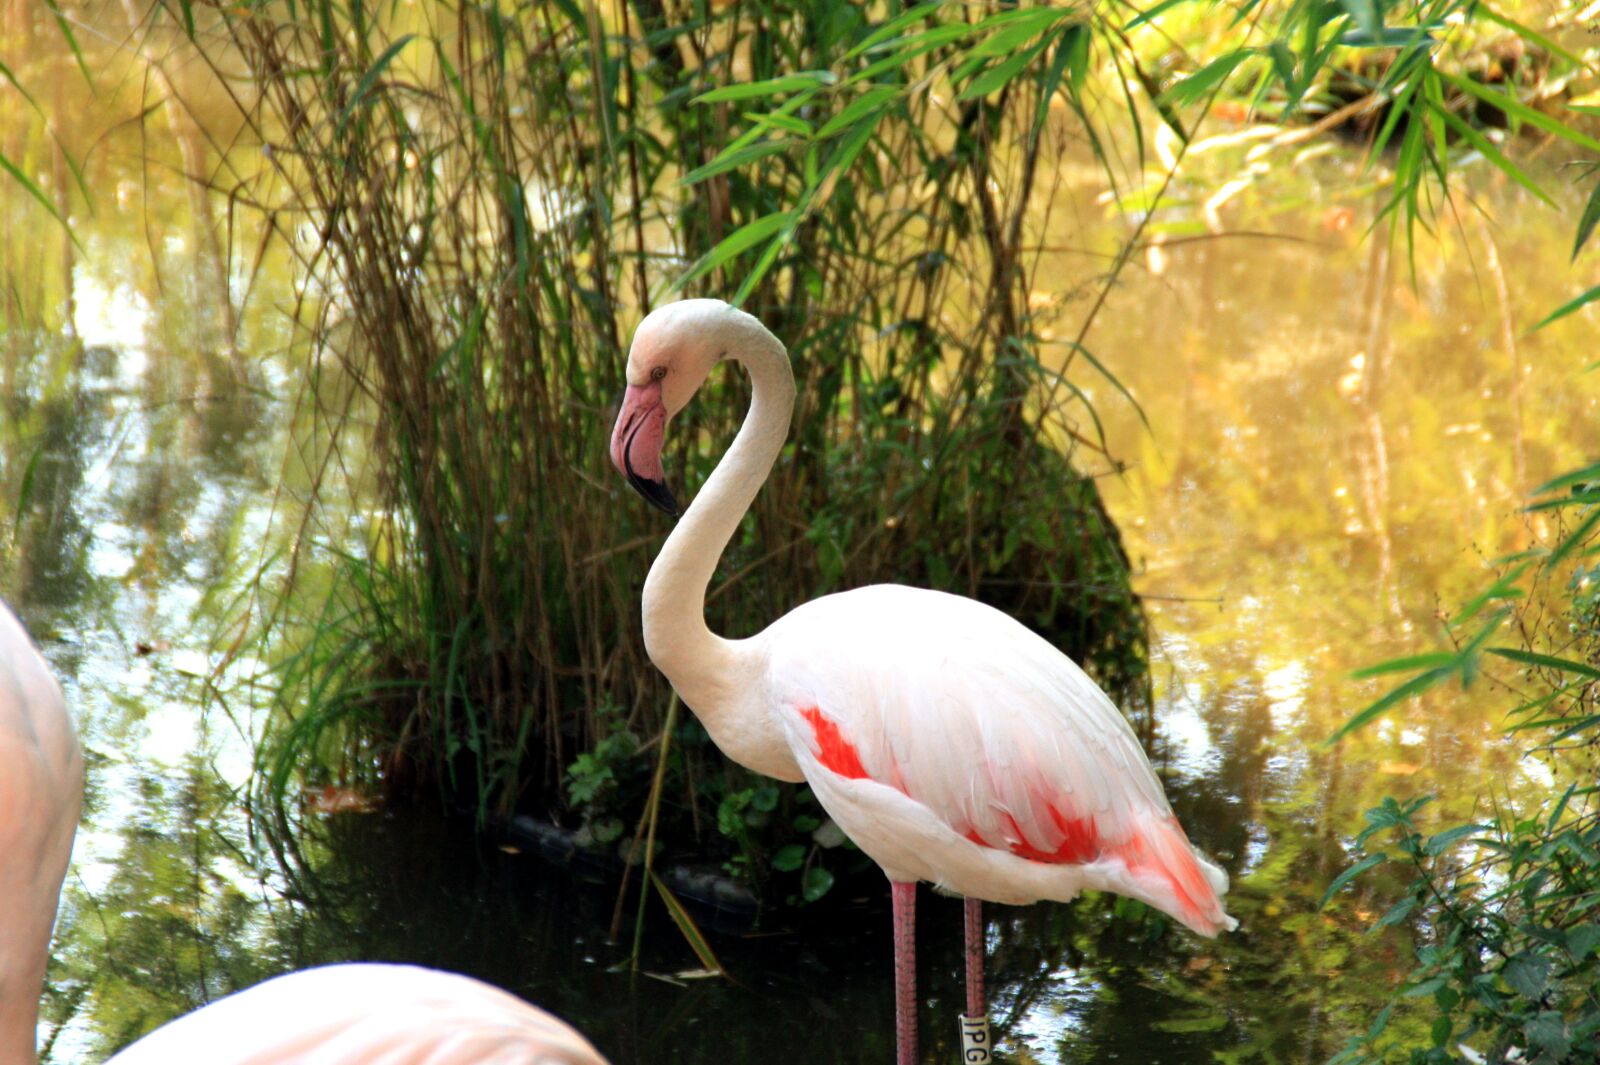 Canon EOS 450D (EOS Rebel XSi / EOS Kiss X2) sample photo. Flamingo, bird, plumage photography